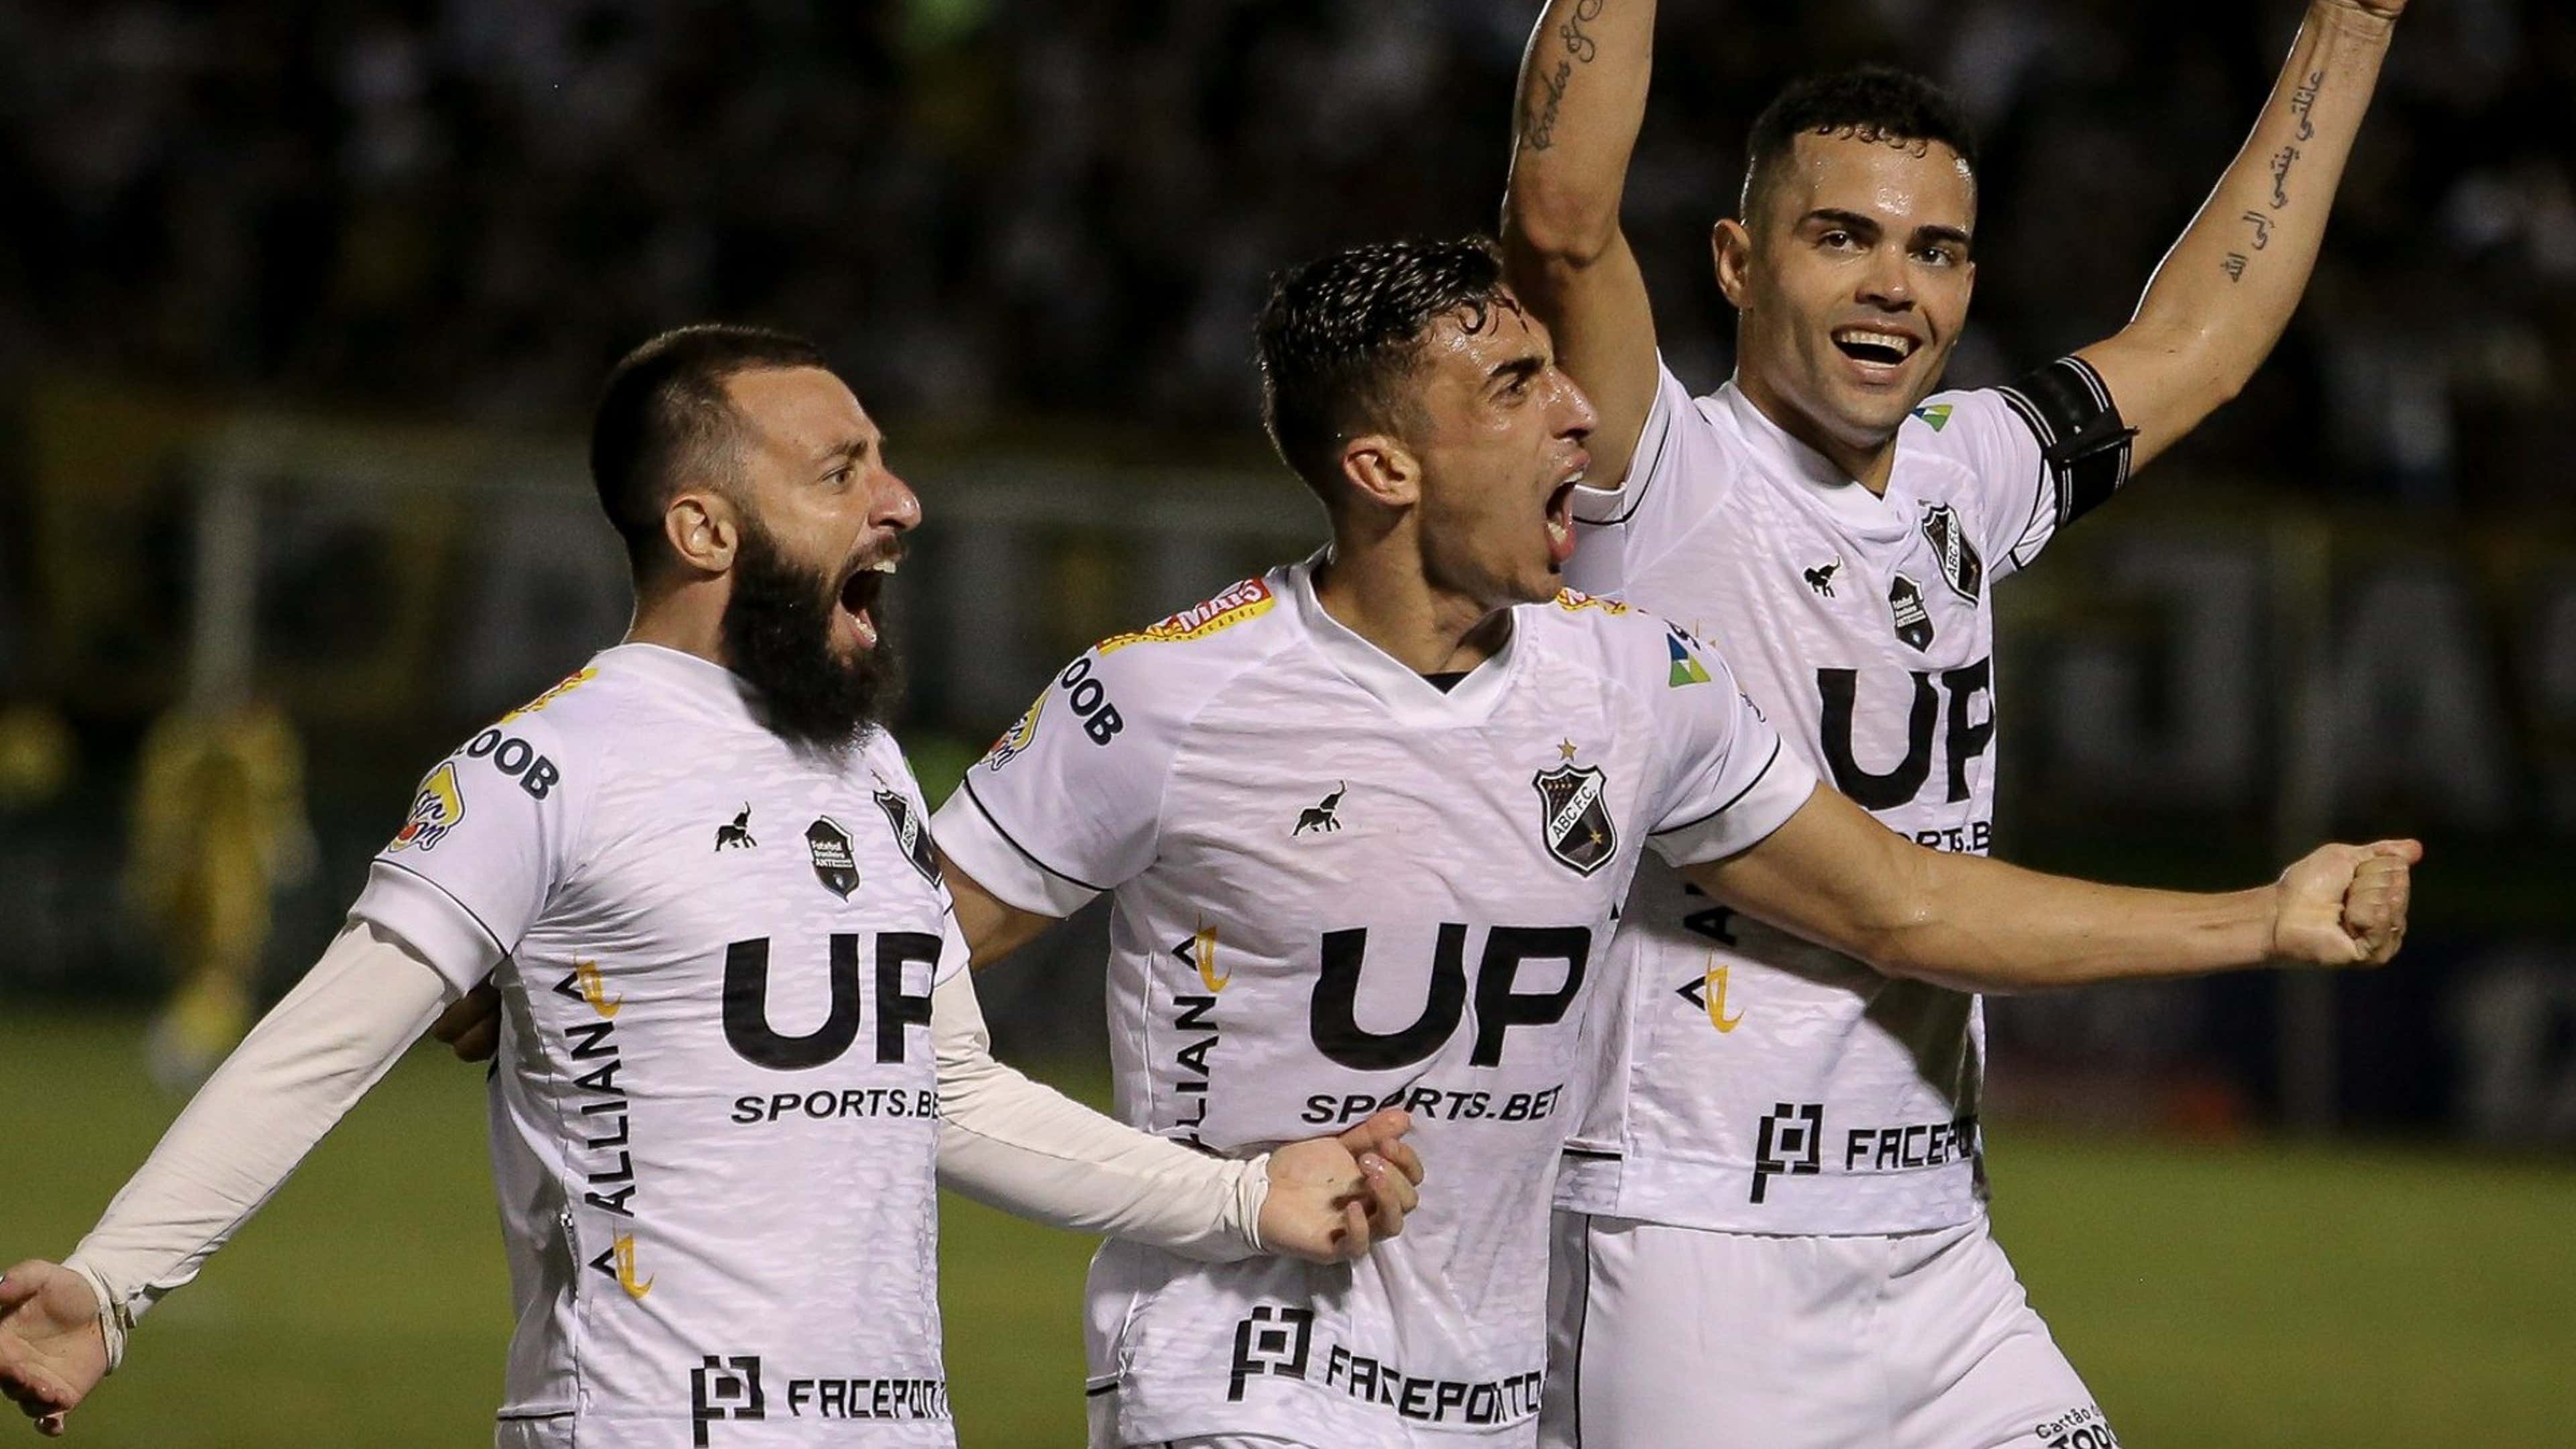 Paulista Série A4: confira a tabela e os jogos da 1ª fase da nova divisão  do campeonato em 2024, futebol